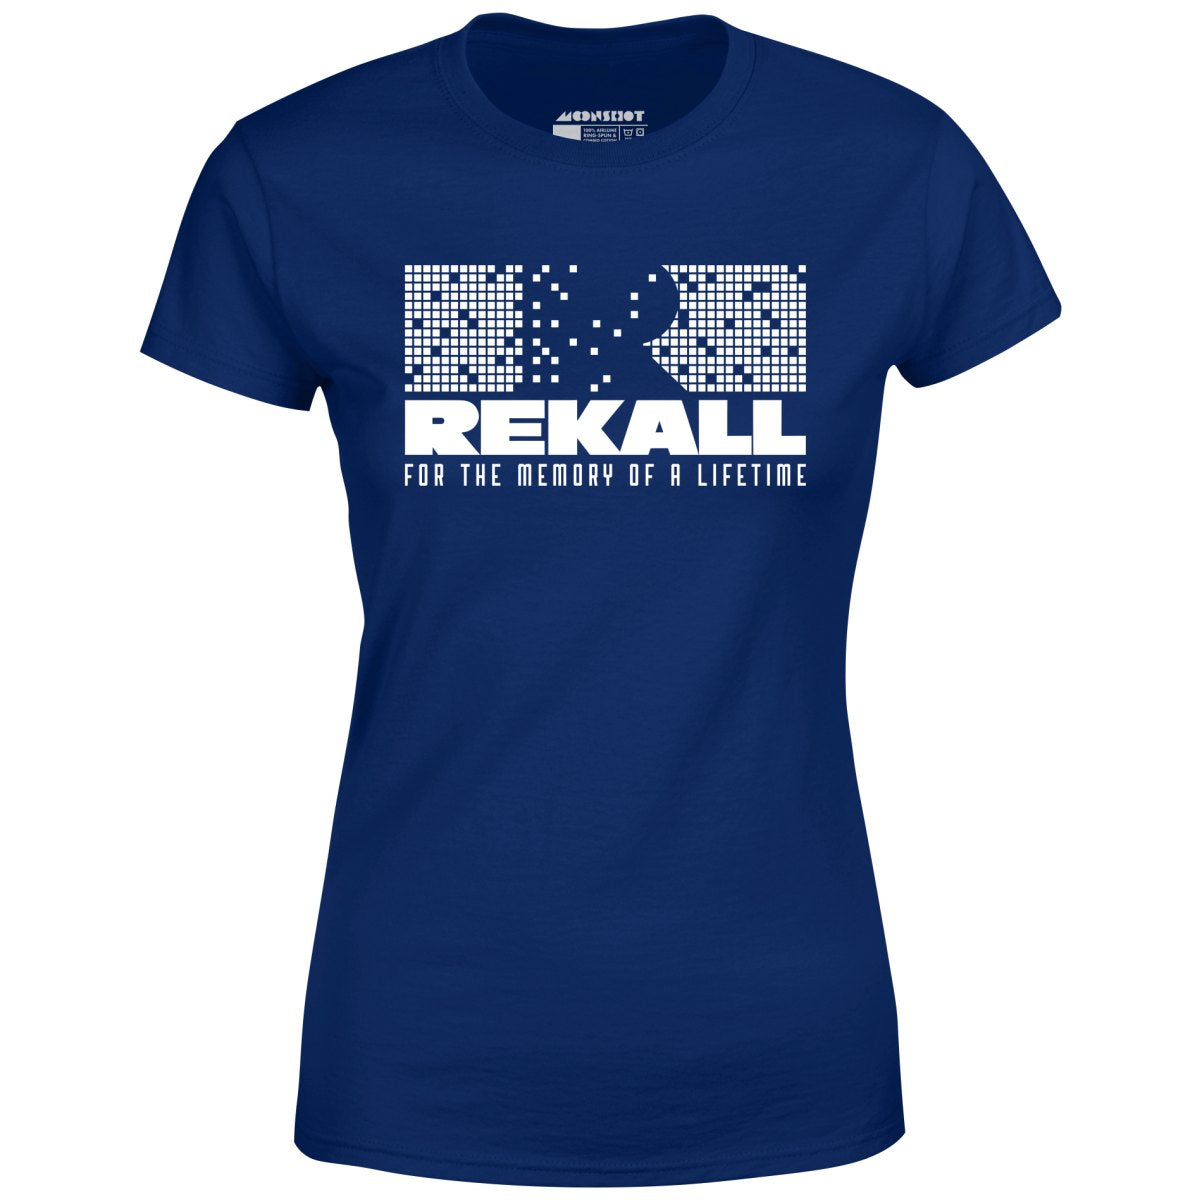 Rekall - Total Recall - Women's T-Shirt